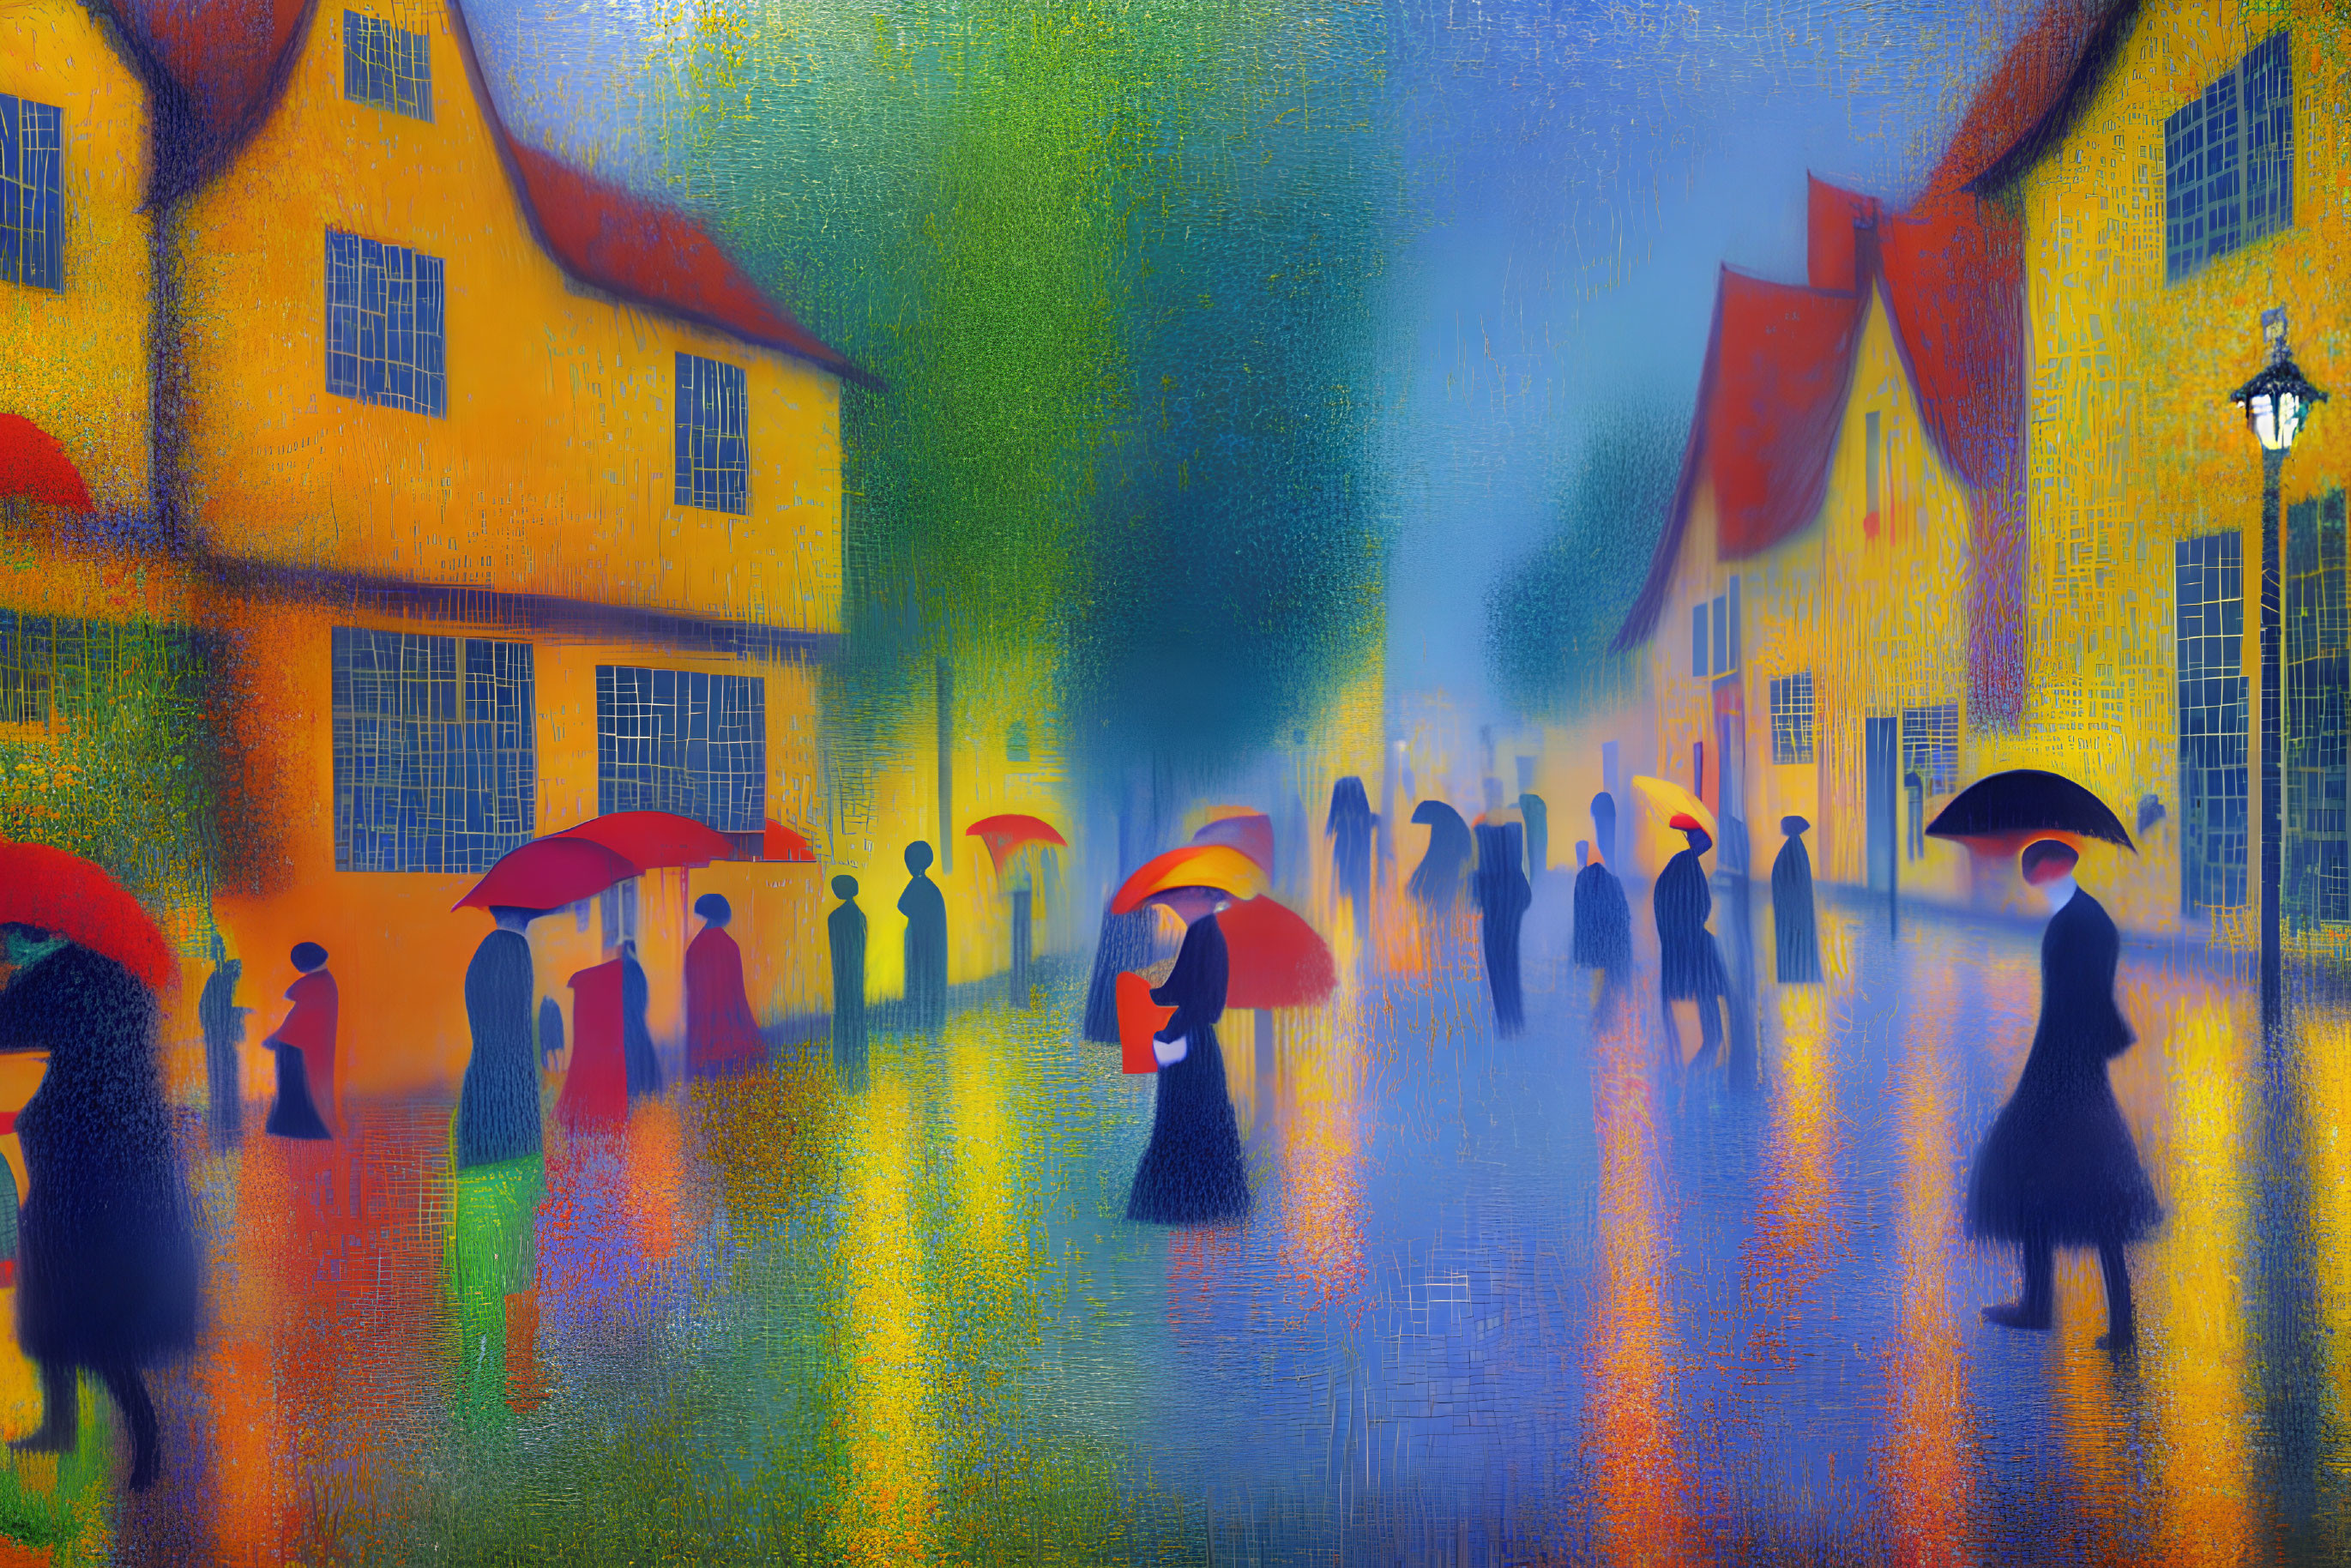 Vibrant Impressionist Painting of People with Umbrellas on Rainy Street